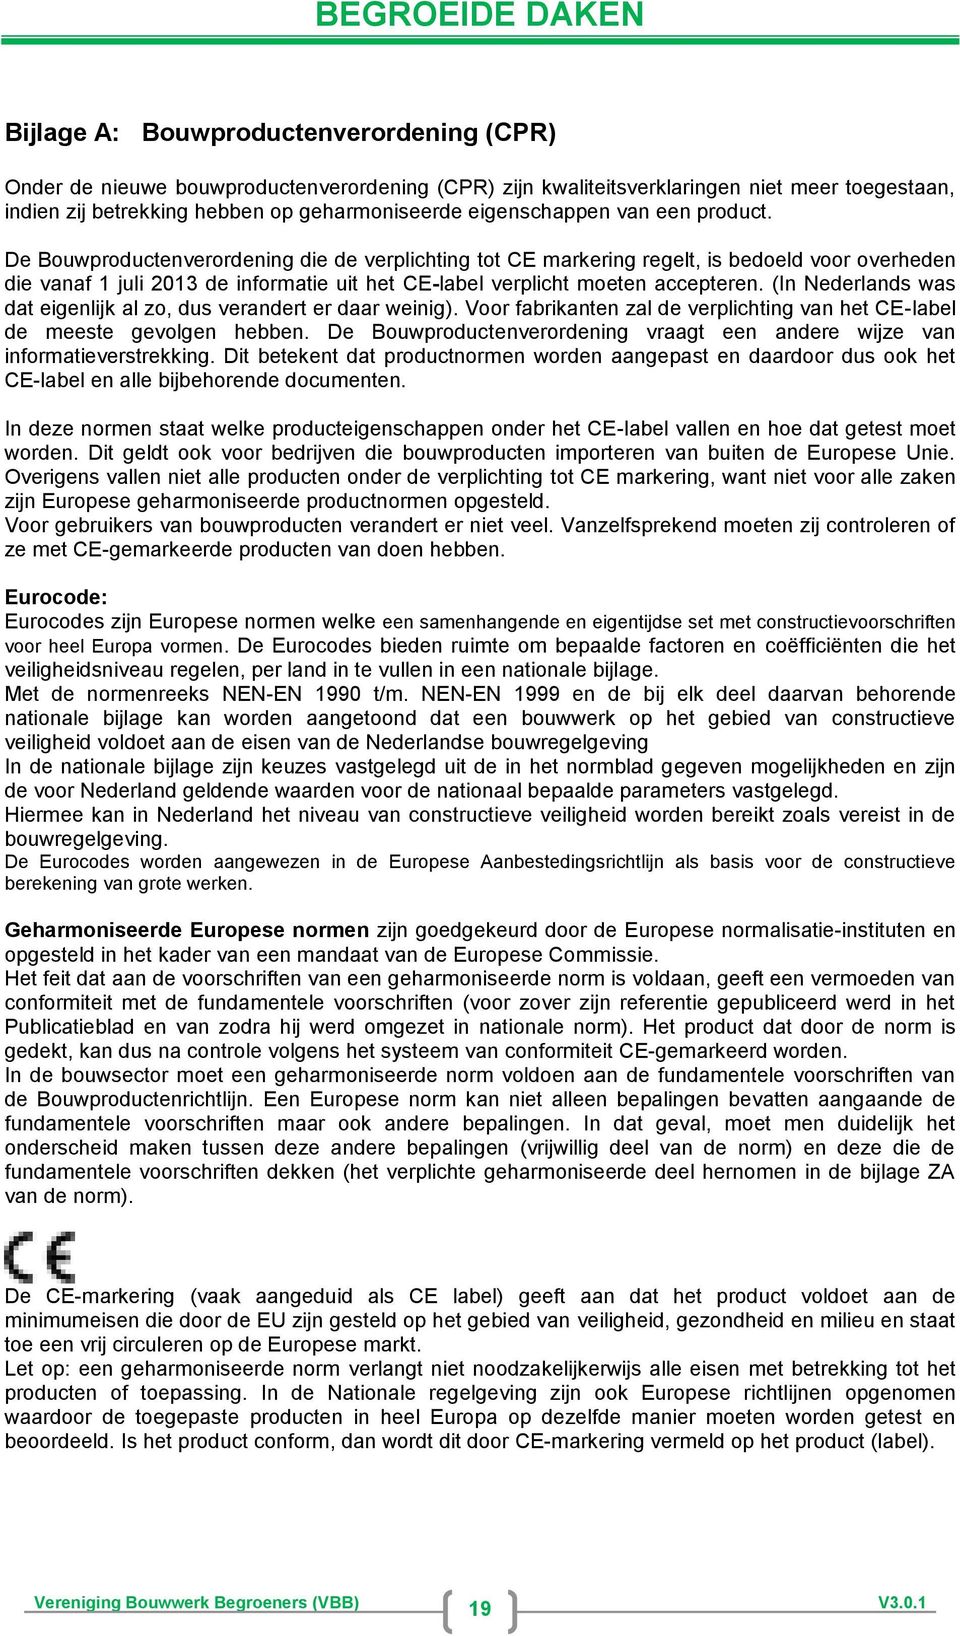 De Bouwproductenverordening die de verplichting tot CE markering regelt, is bedoeld voor overheden die vanaf 1 juli 2013 de informatie uit het CE-label verplicht moeten accepteren.